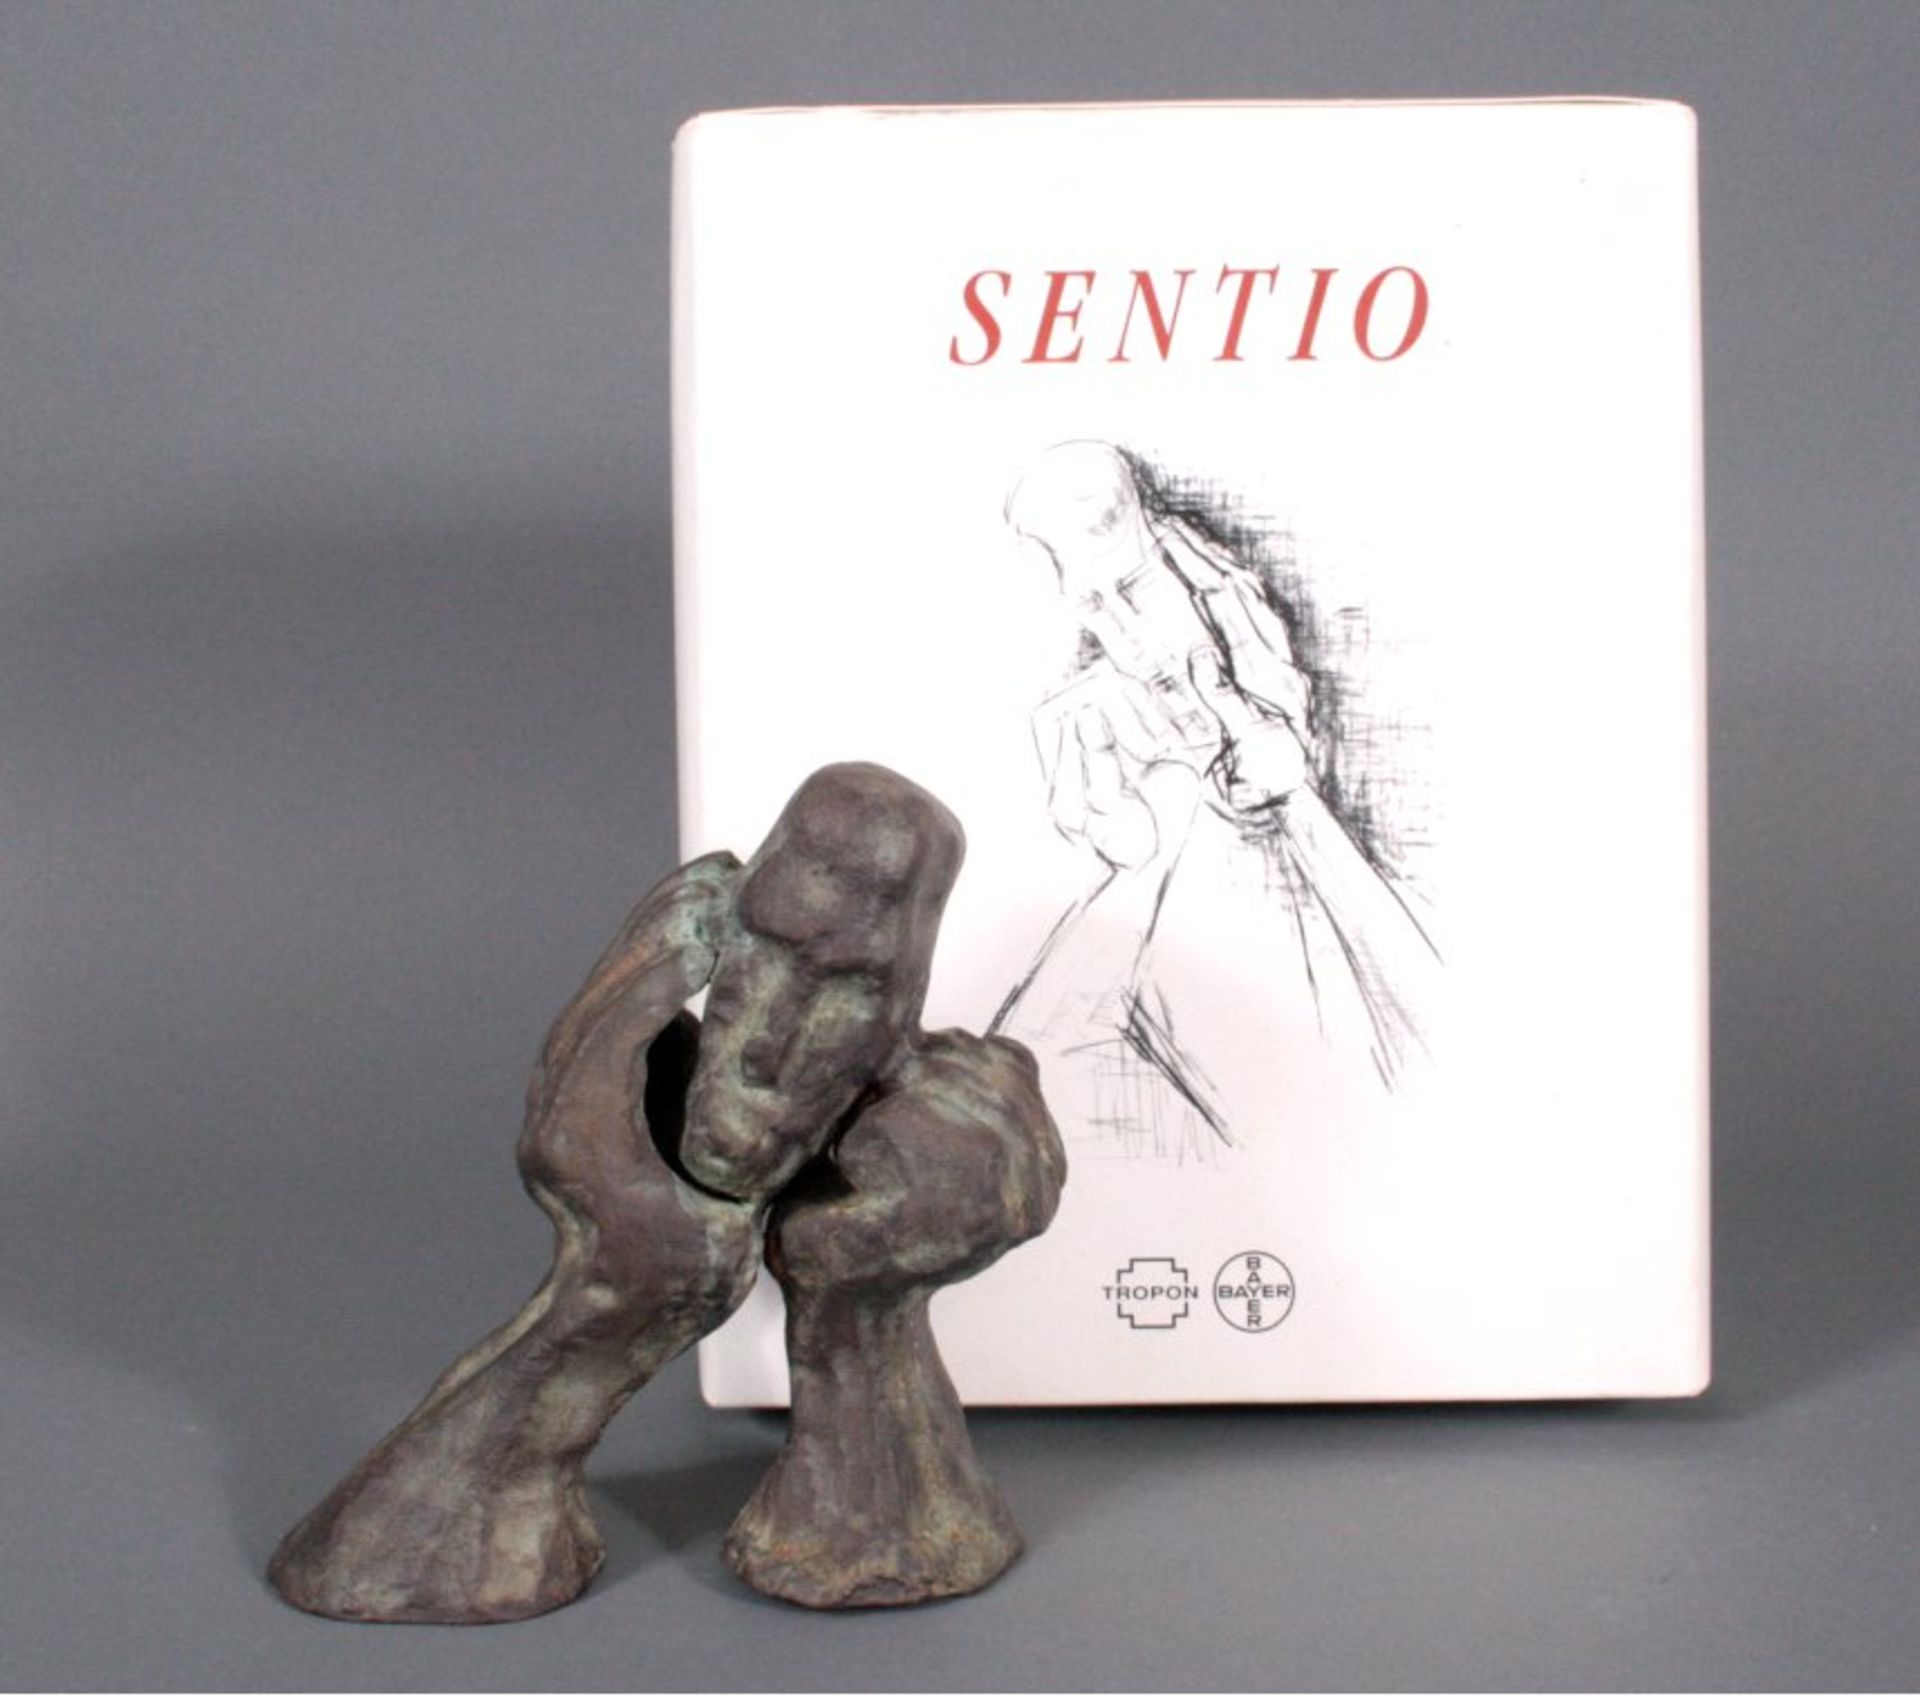 Dieter W. Meding (1942), Bronzeskulptur "Sentino"ca. 14,5x14x7 cm. - Bild 3 aus 3